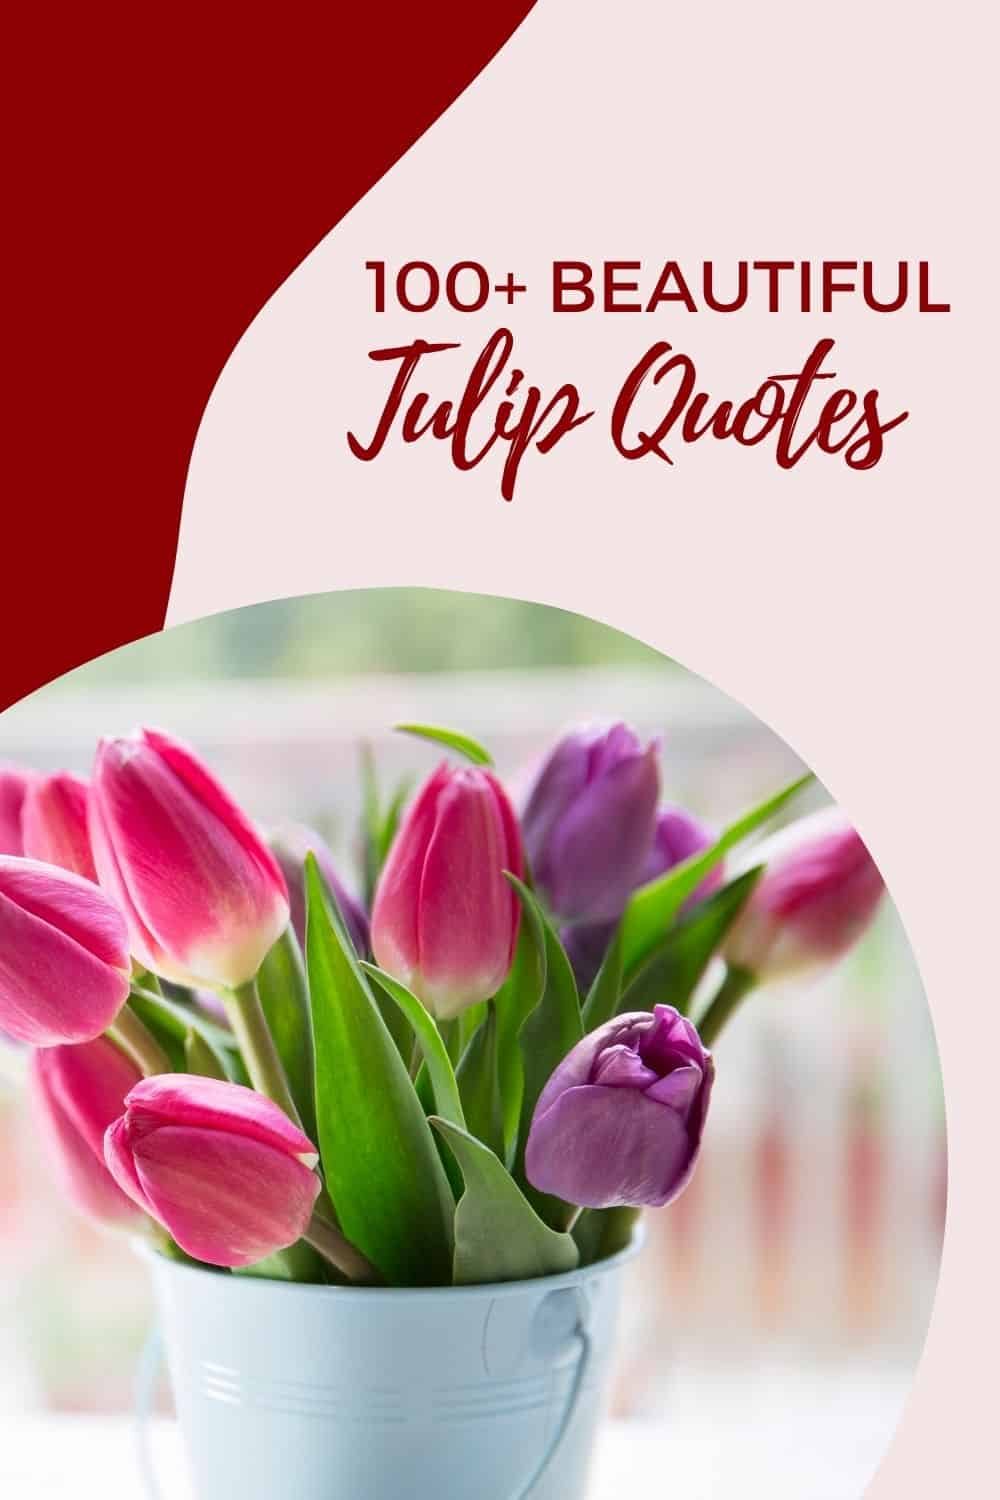 Tulip Quotes - Pin 4 - JPG